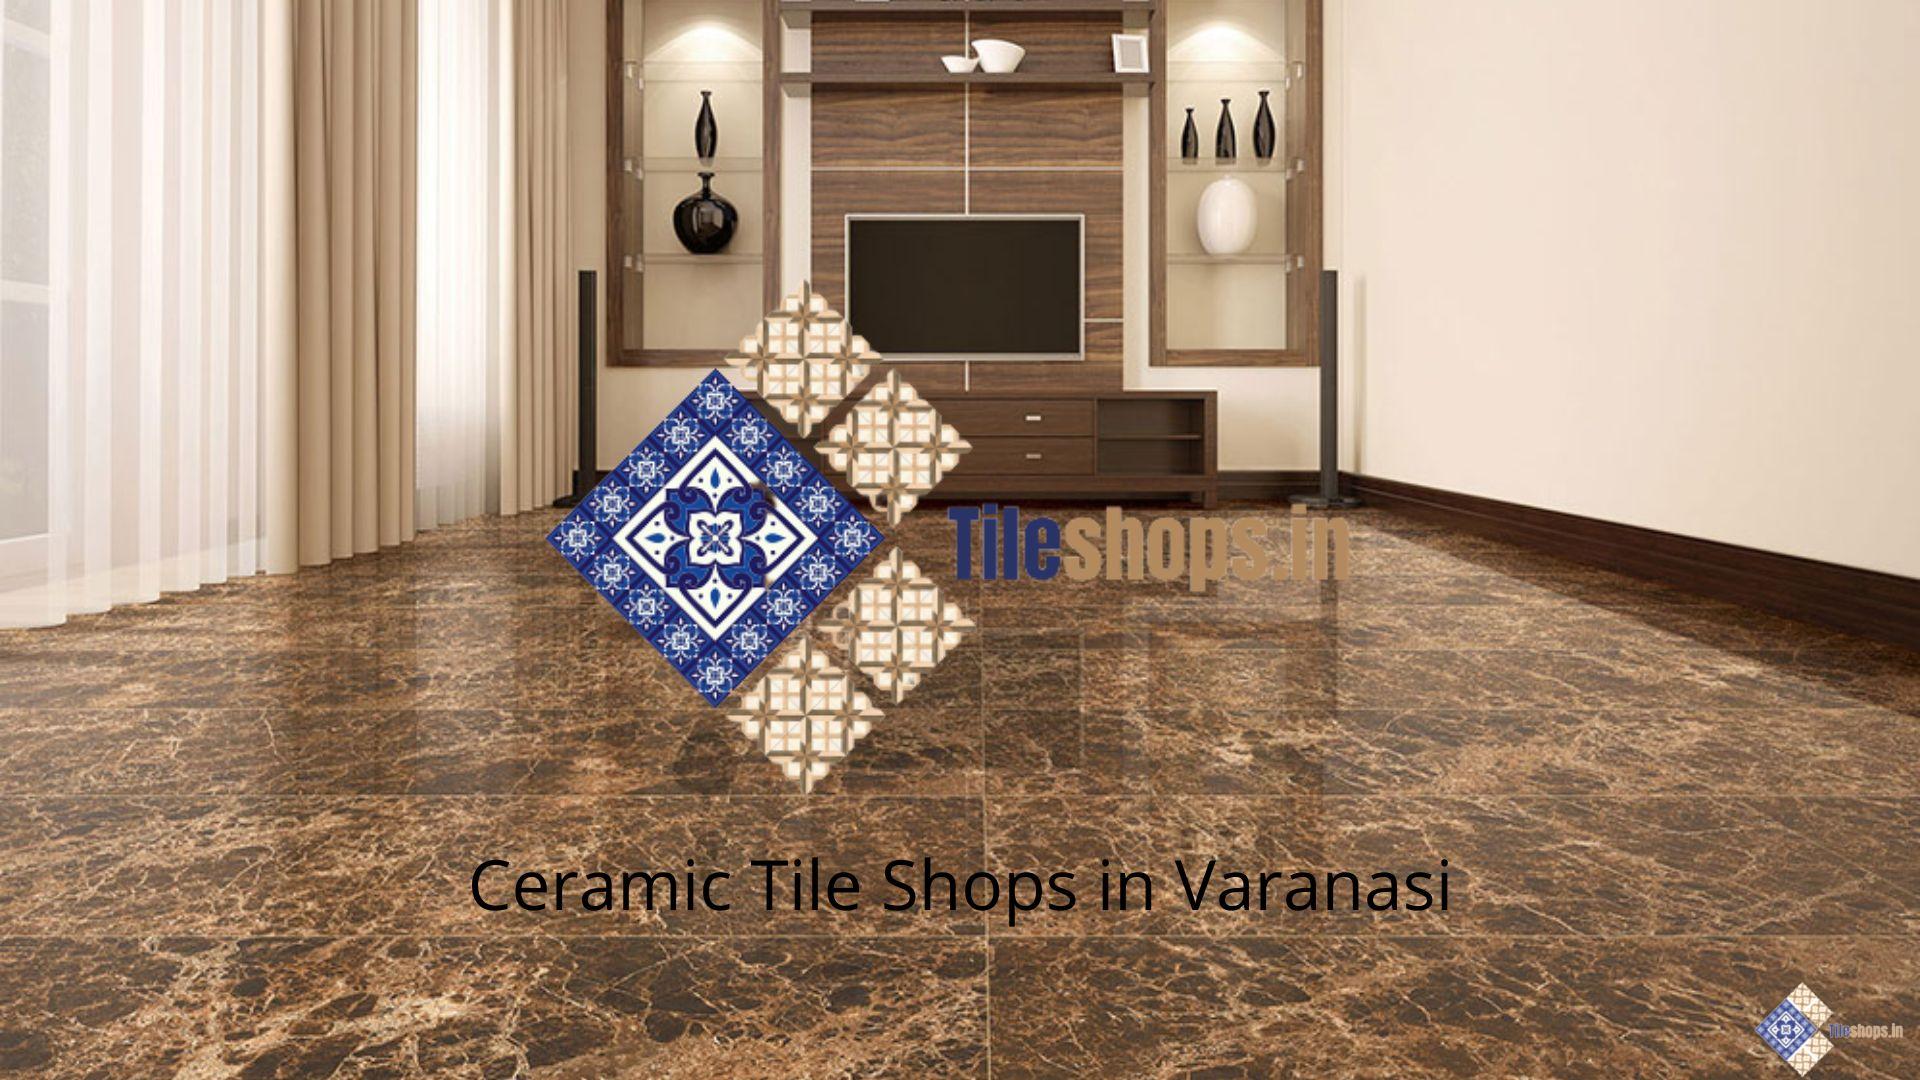 Ceramic Tile Shops in Varanasi